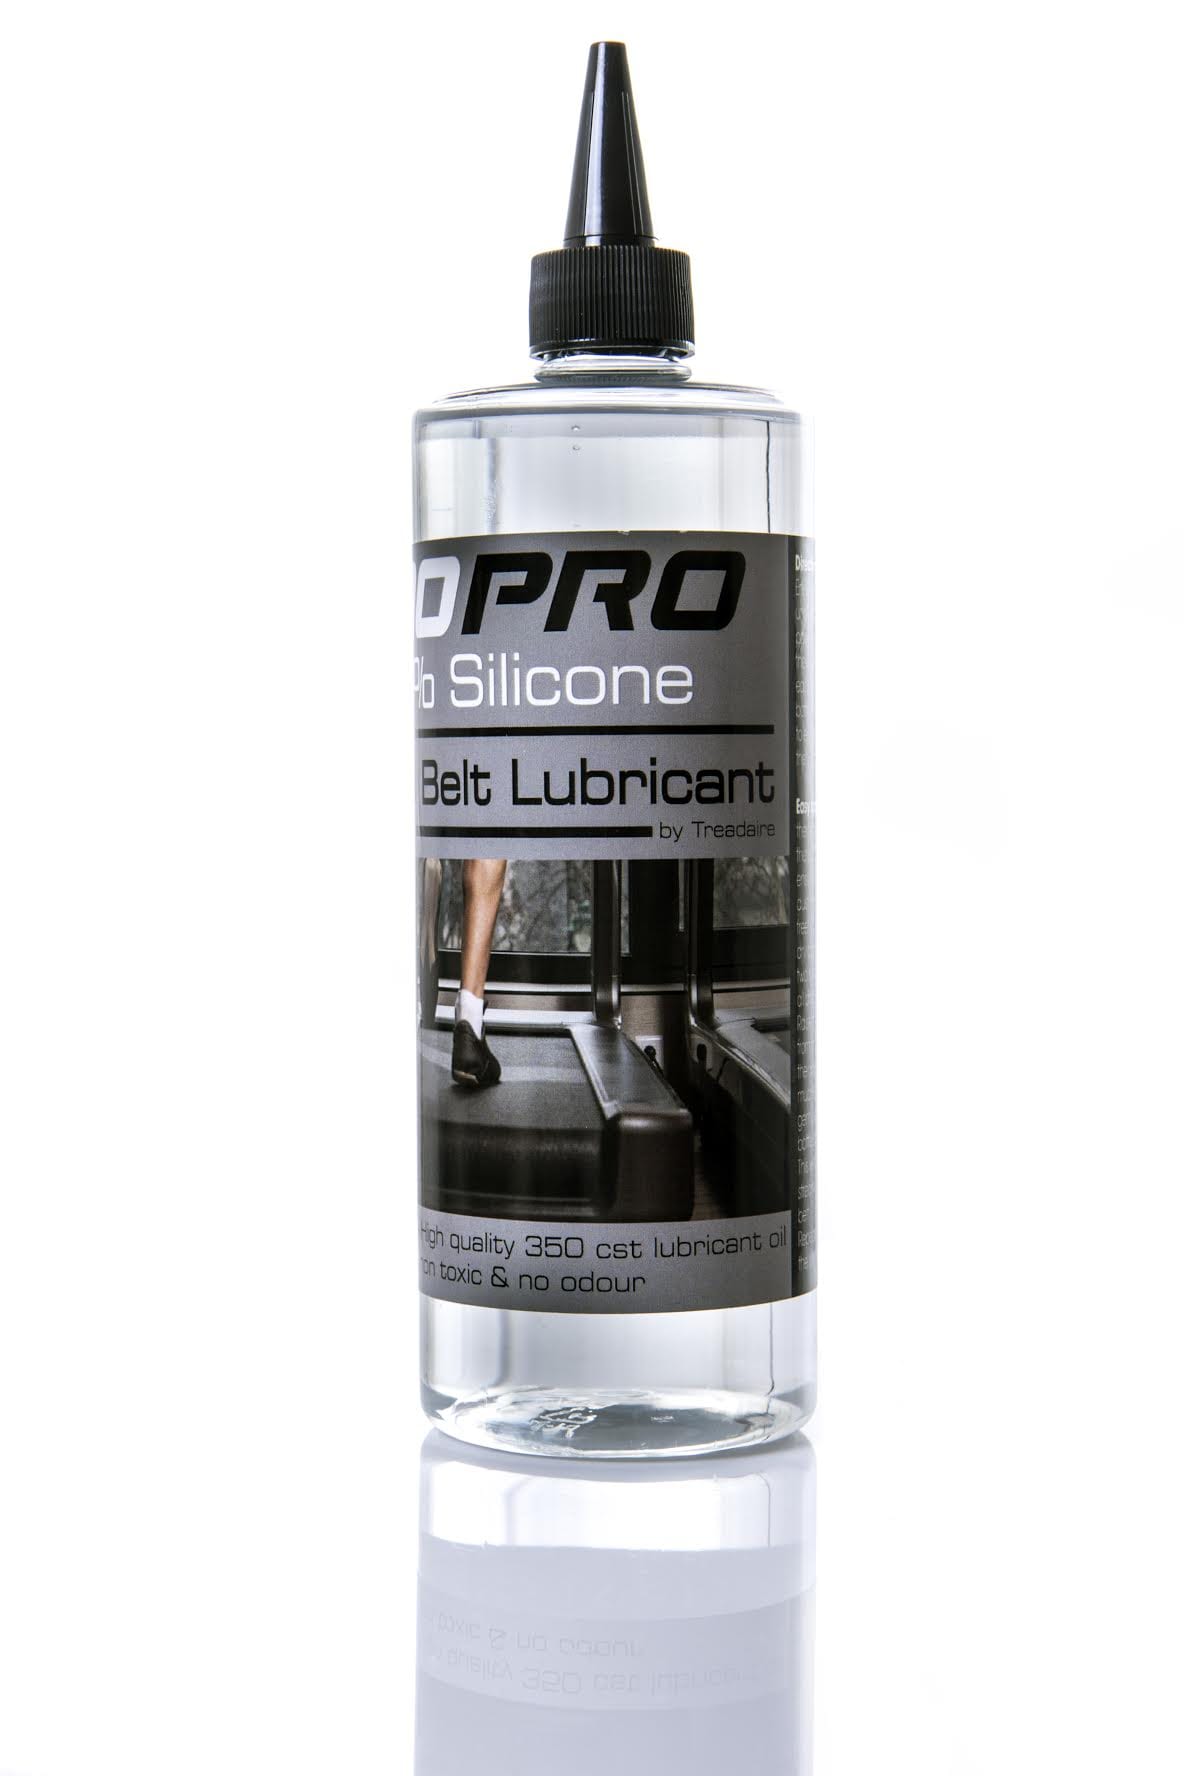 TR10 Pro Silicone Treadmill Oil